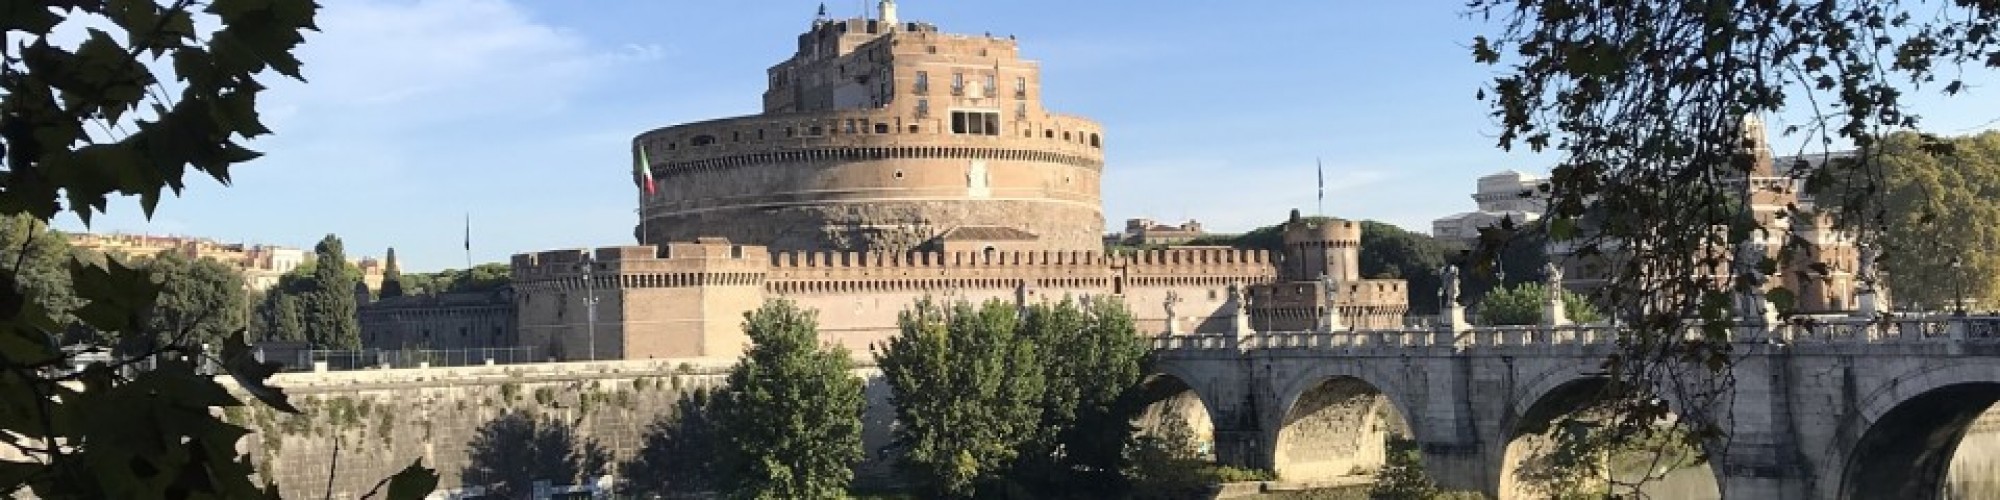 Castel Sant'Angelo Tour